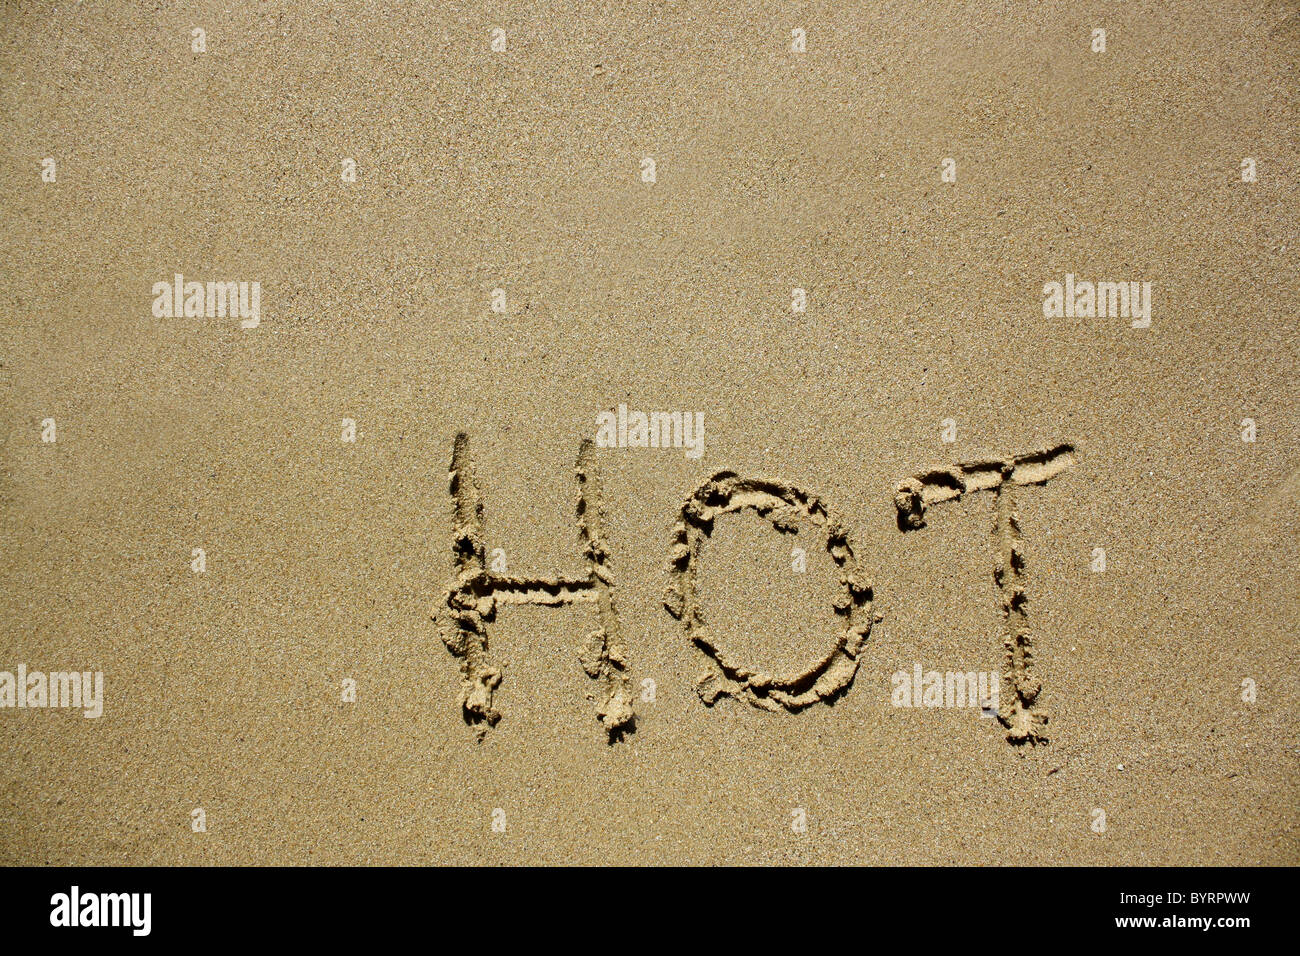 "Heiße" im nassen Sand ausgeschrieben. Bitte siehe meine Sammlung ähnlicher Fotos. Stockfoto